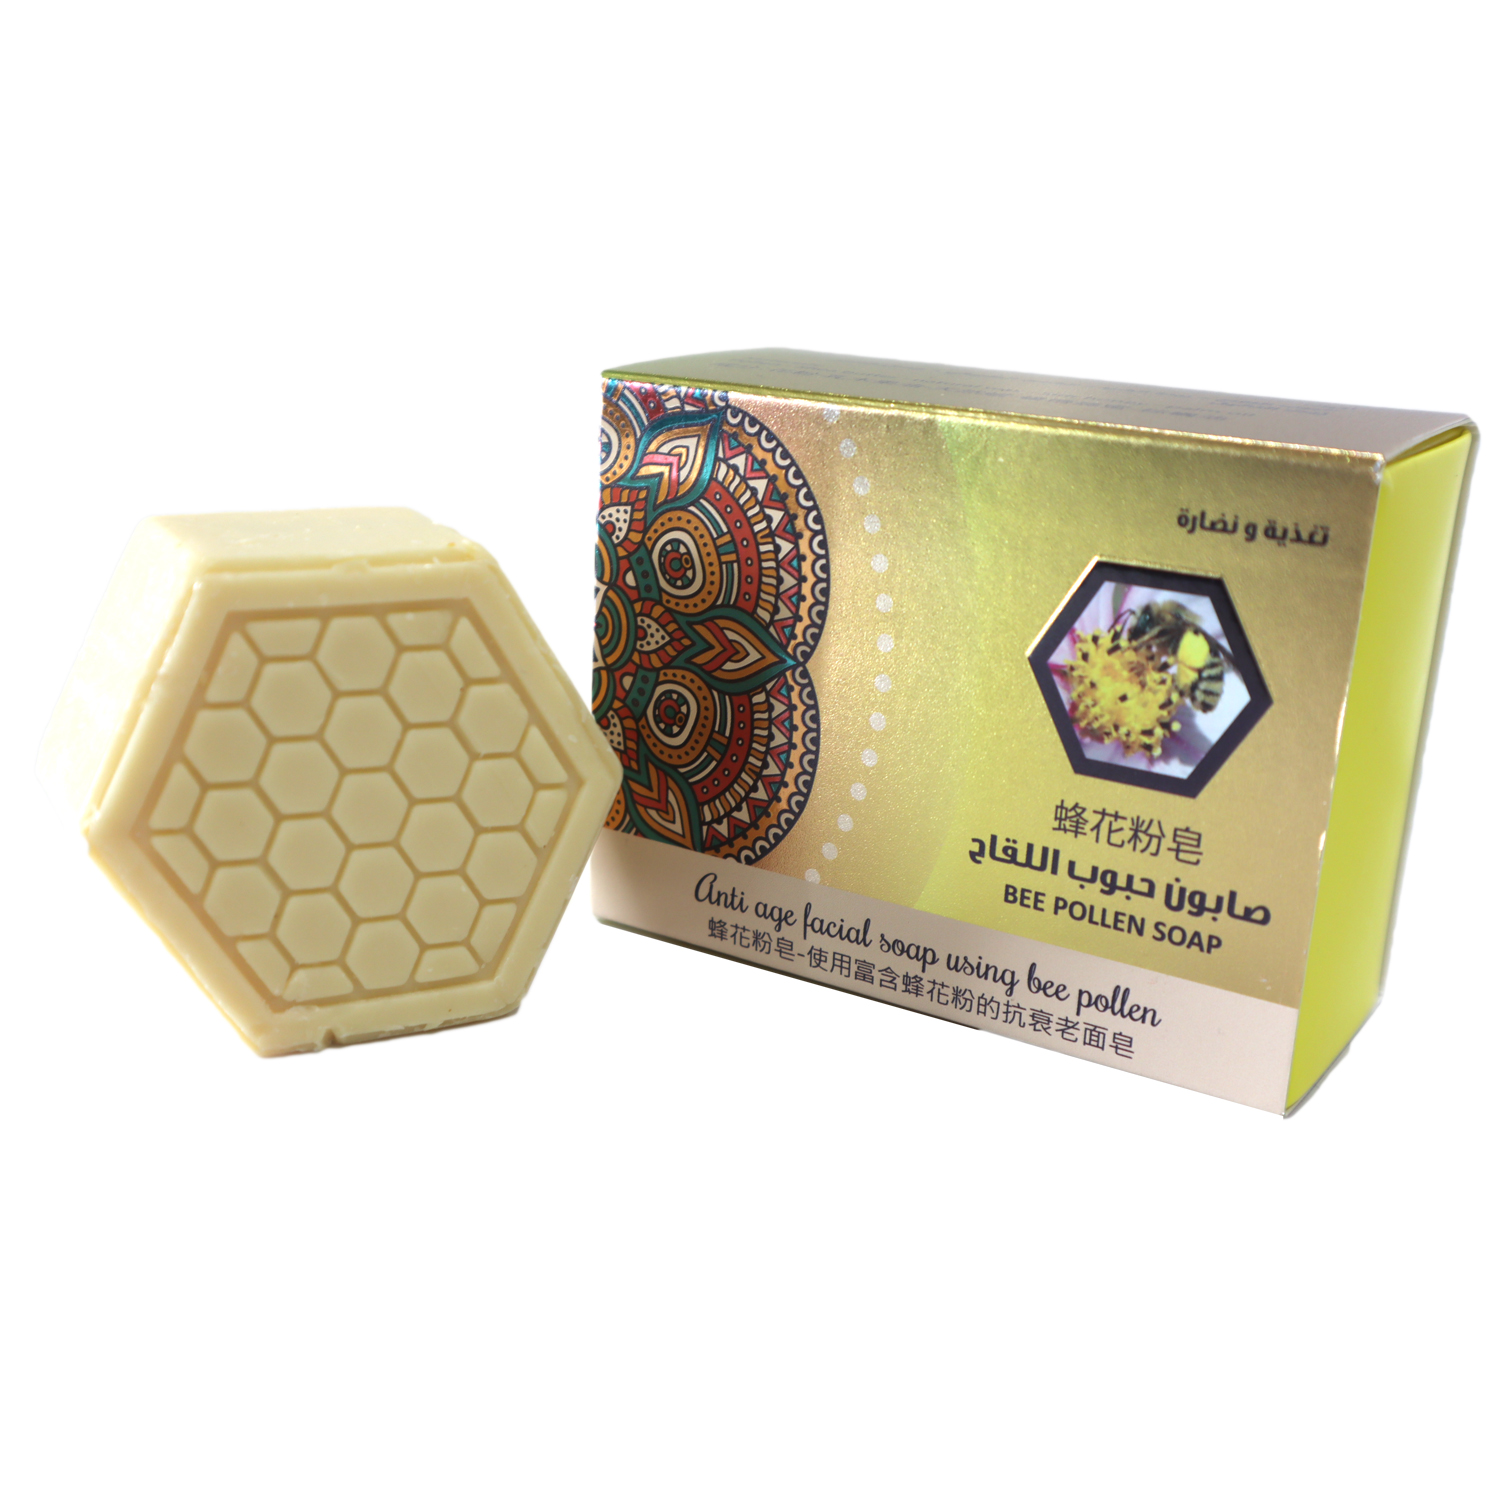 bee pollen soap